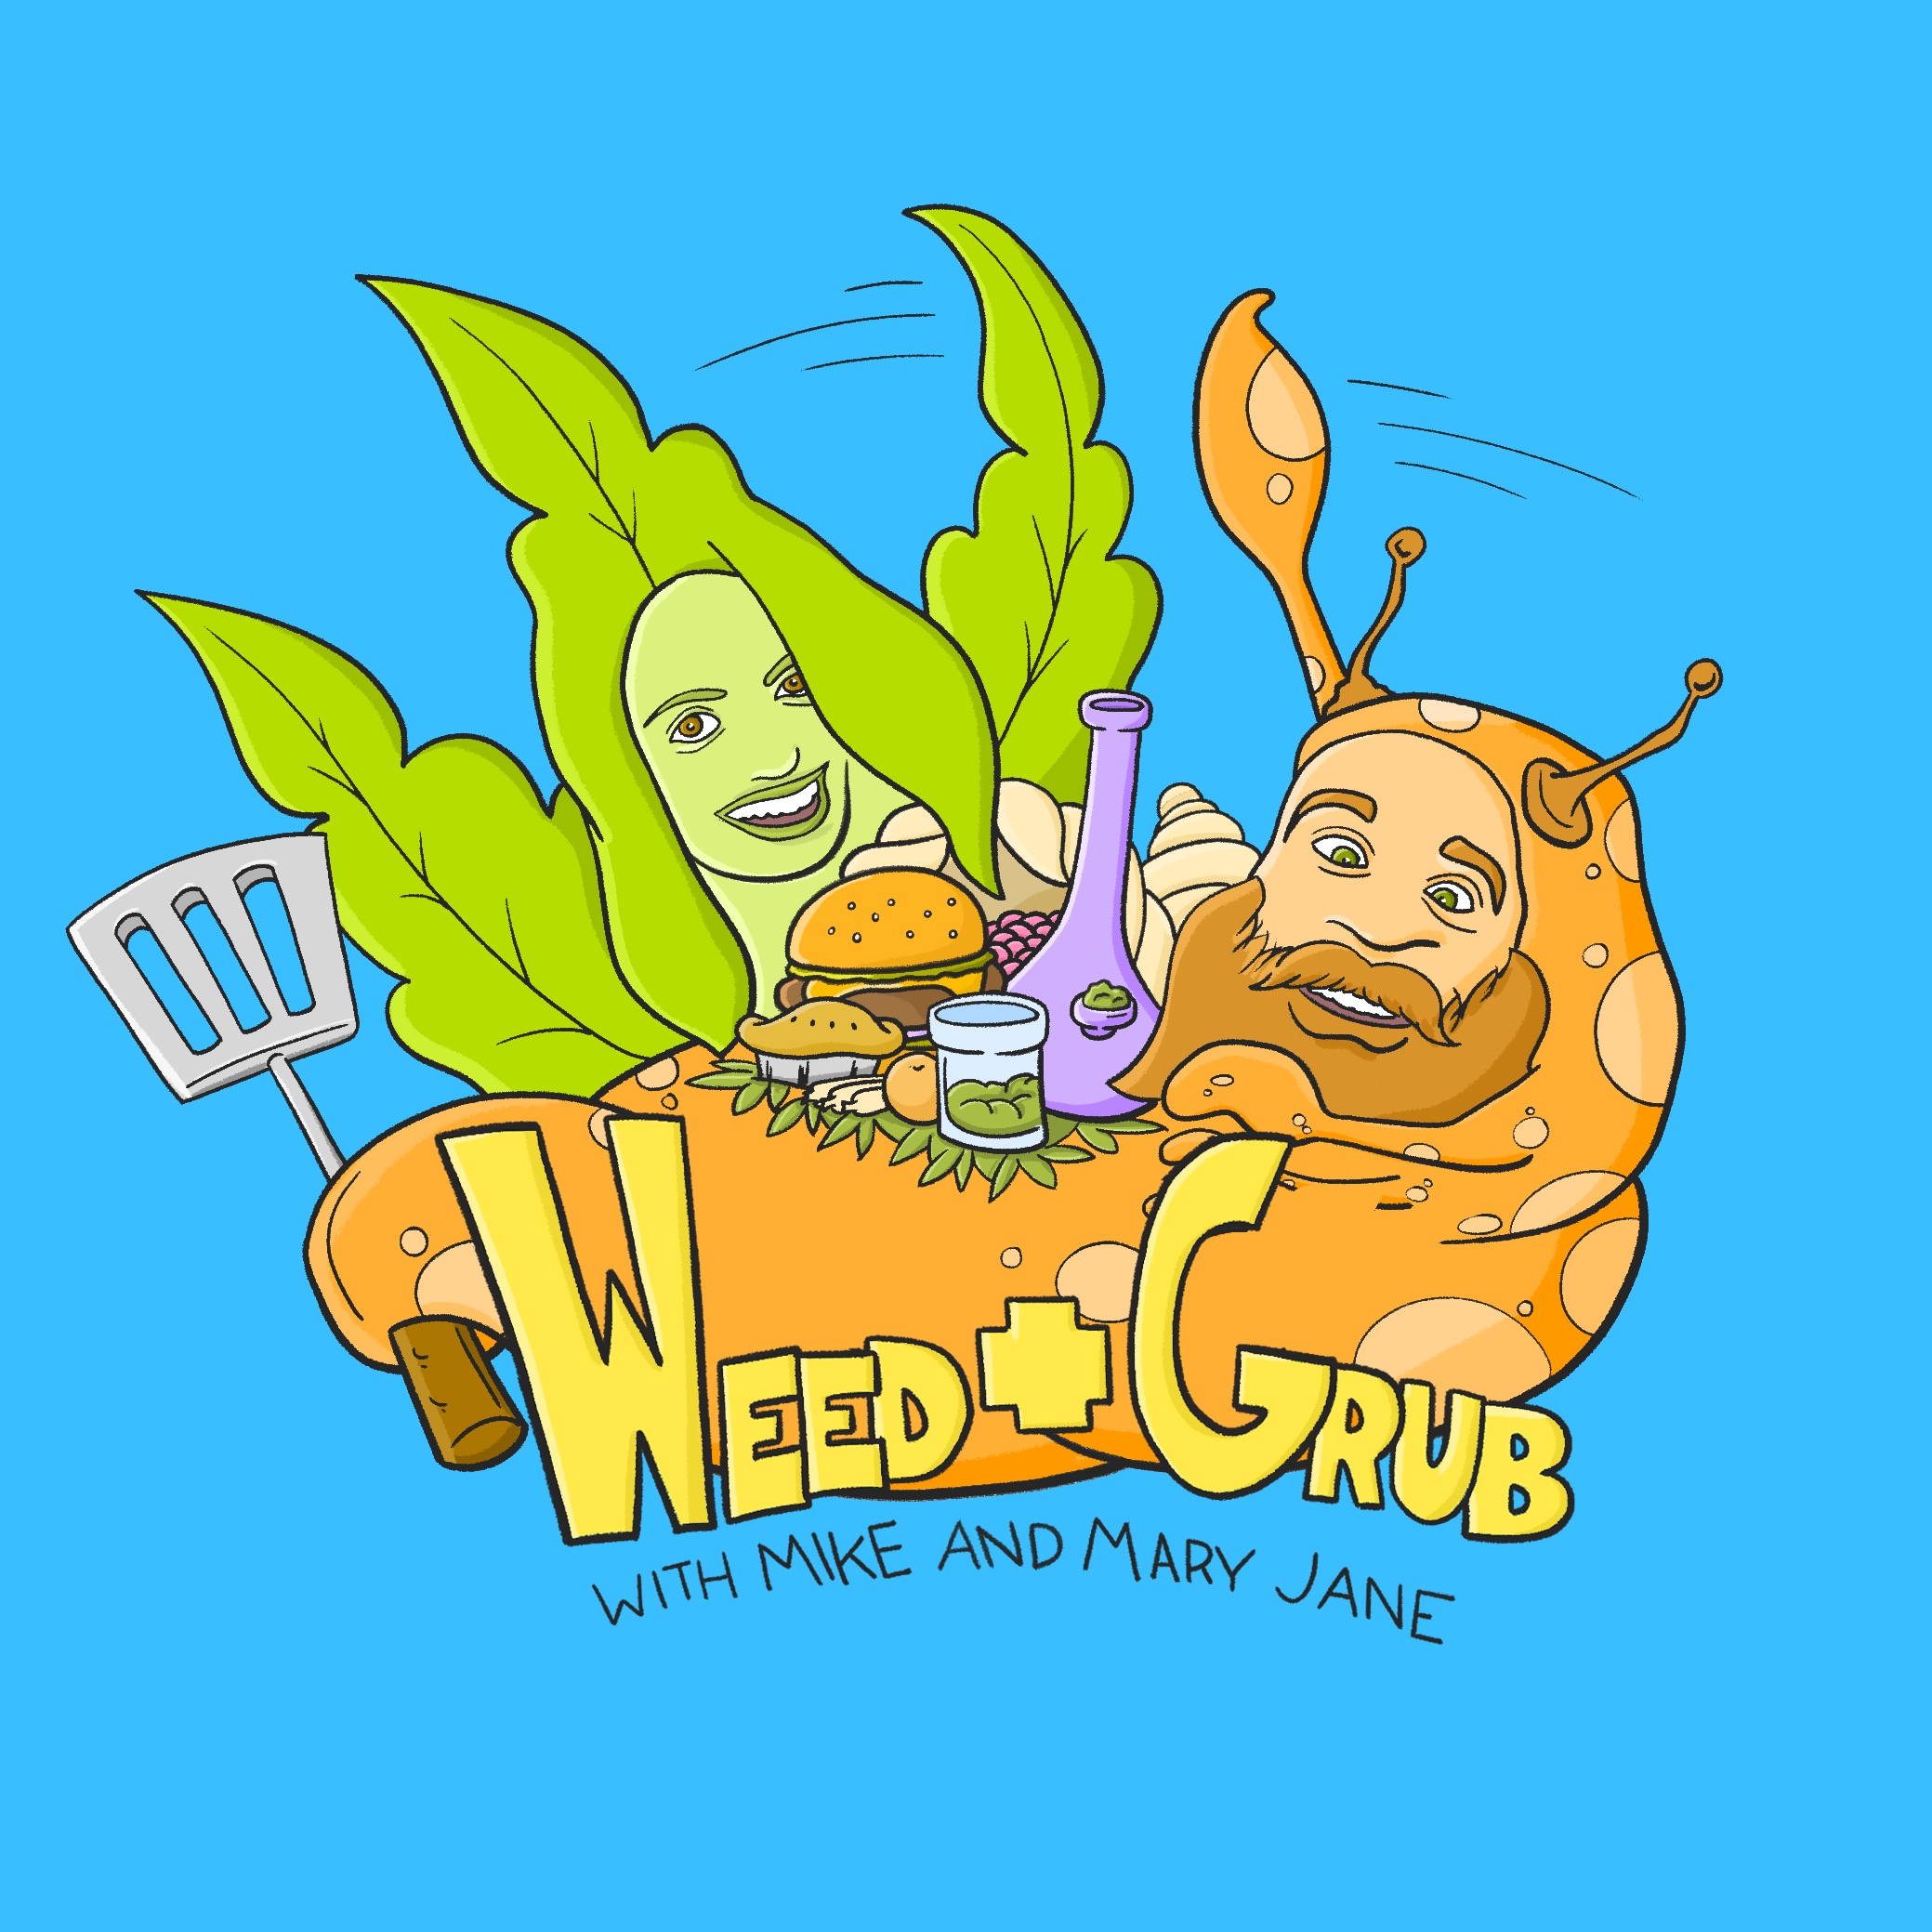 'Weed + Grub'